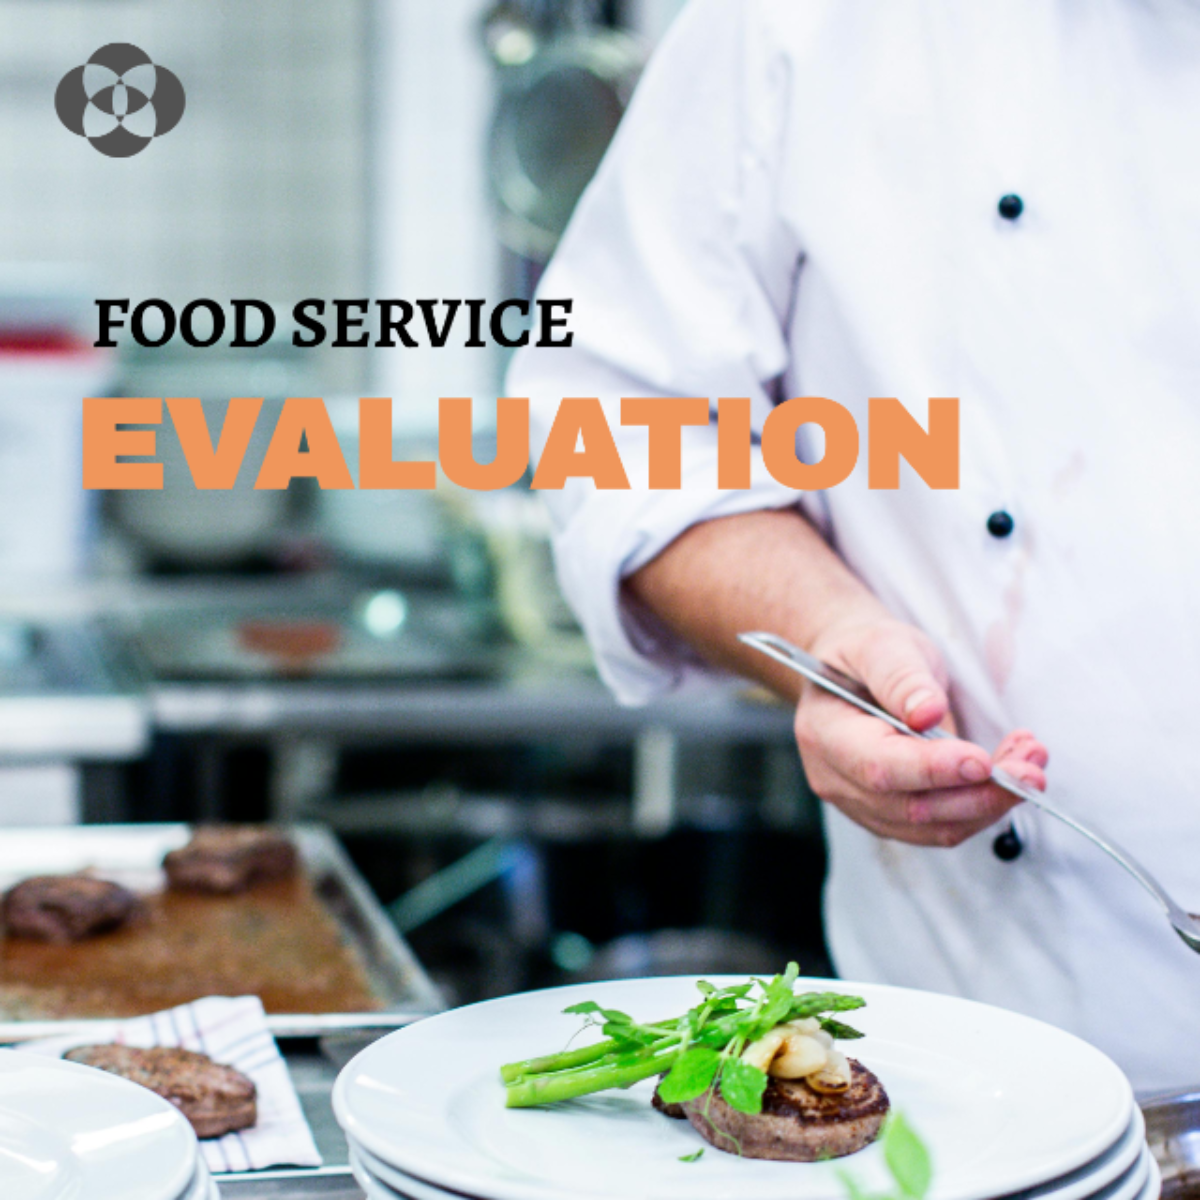 Food Service Evaluation Template